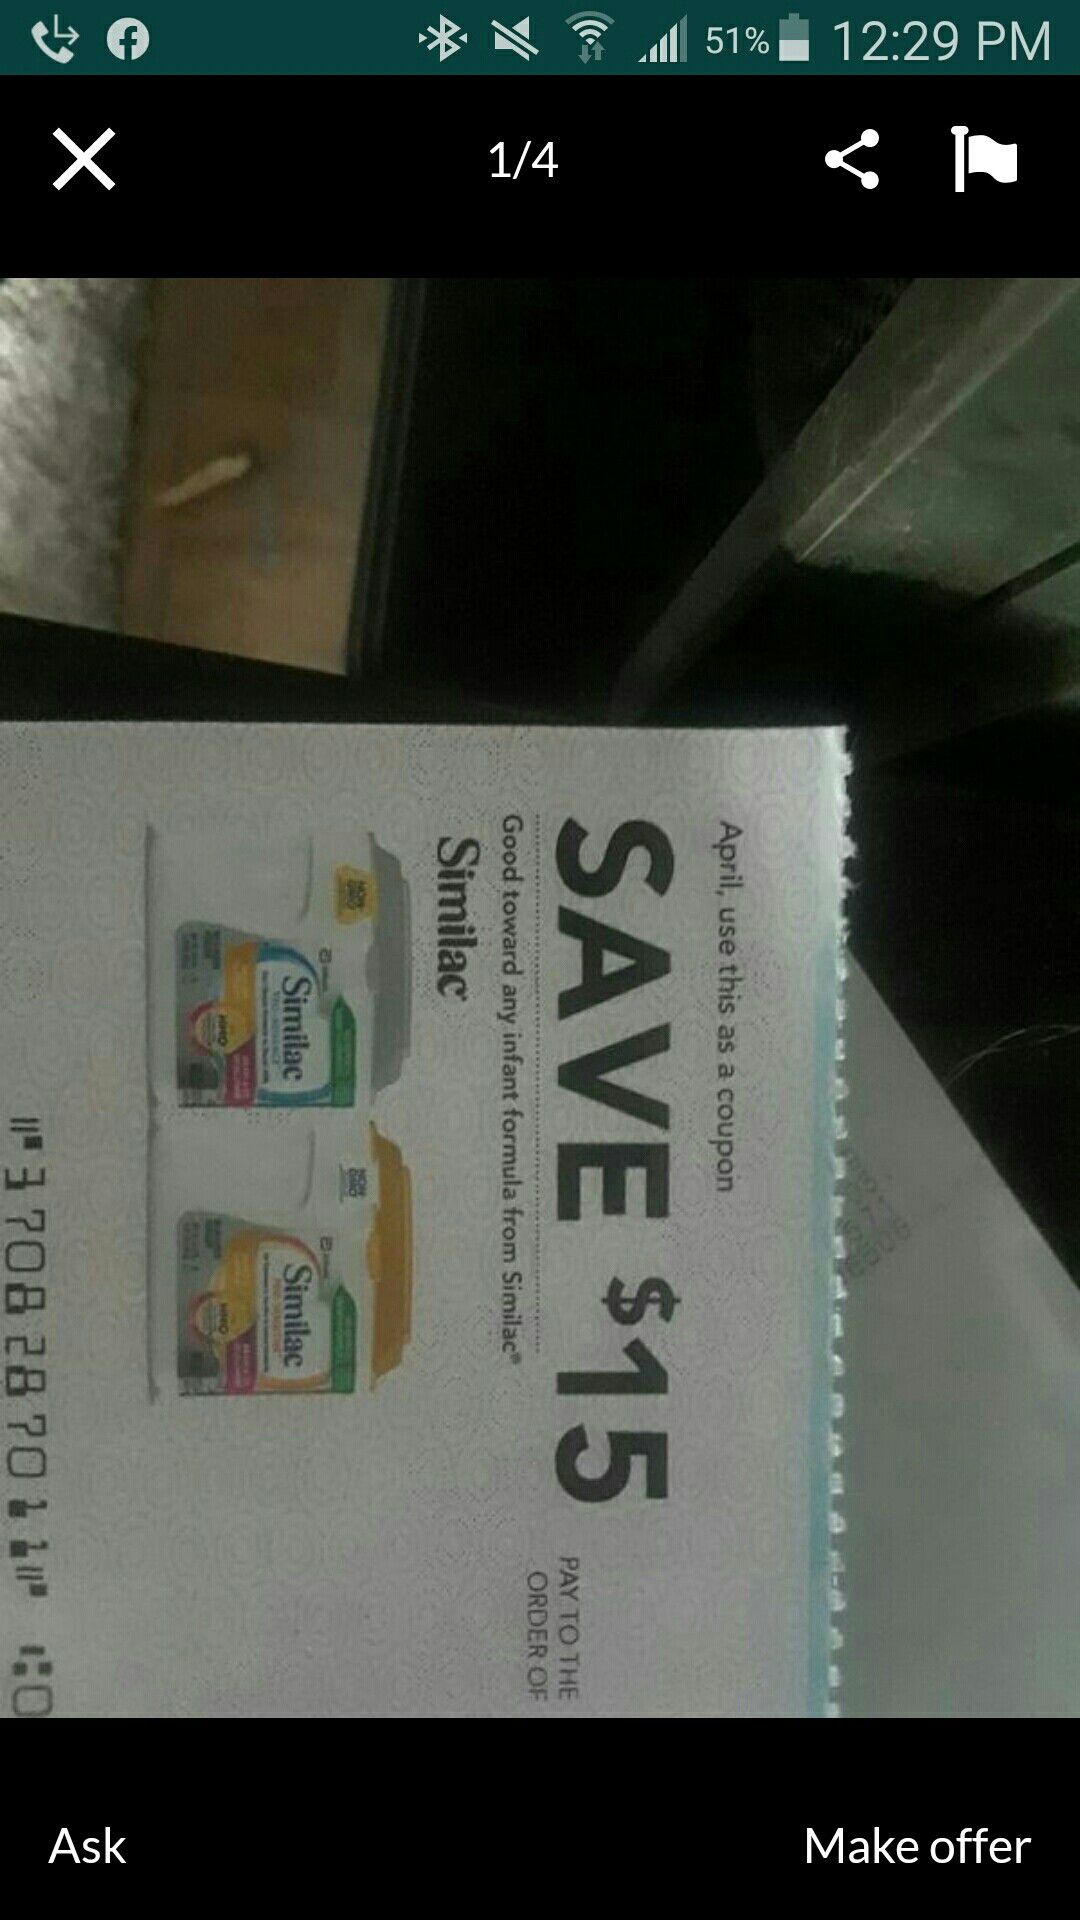 Similac coupon